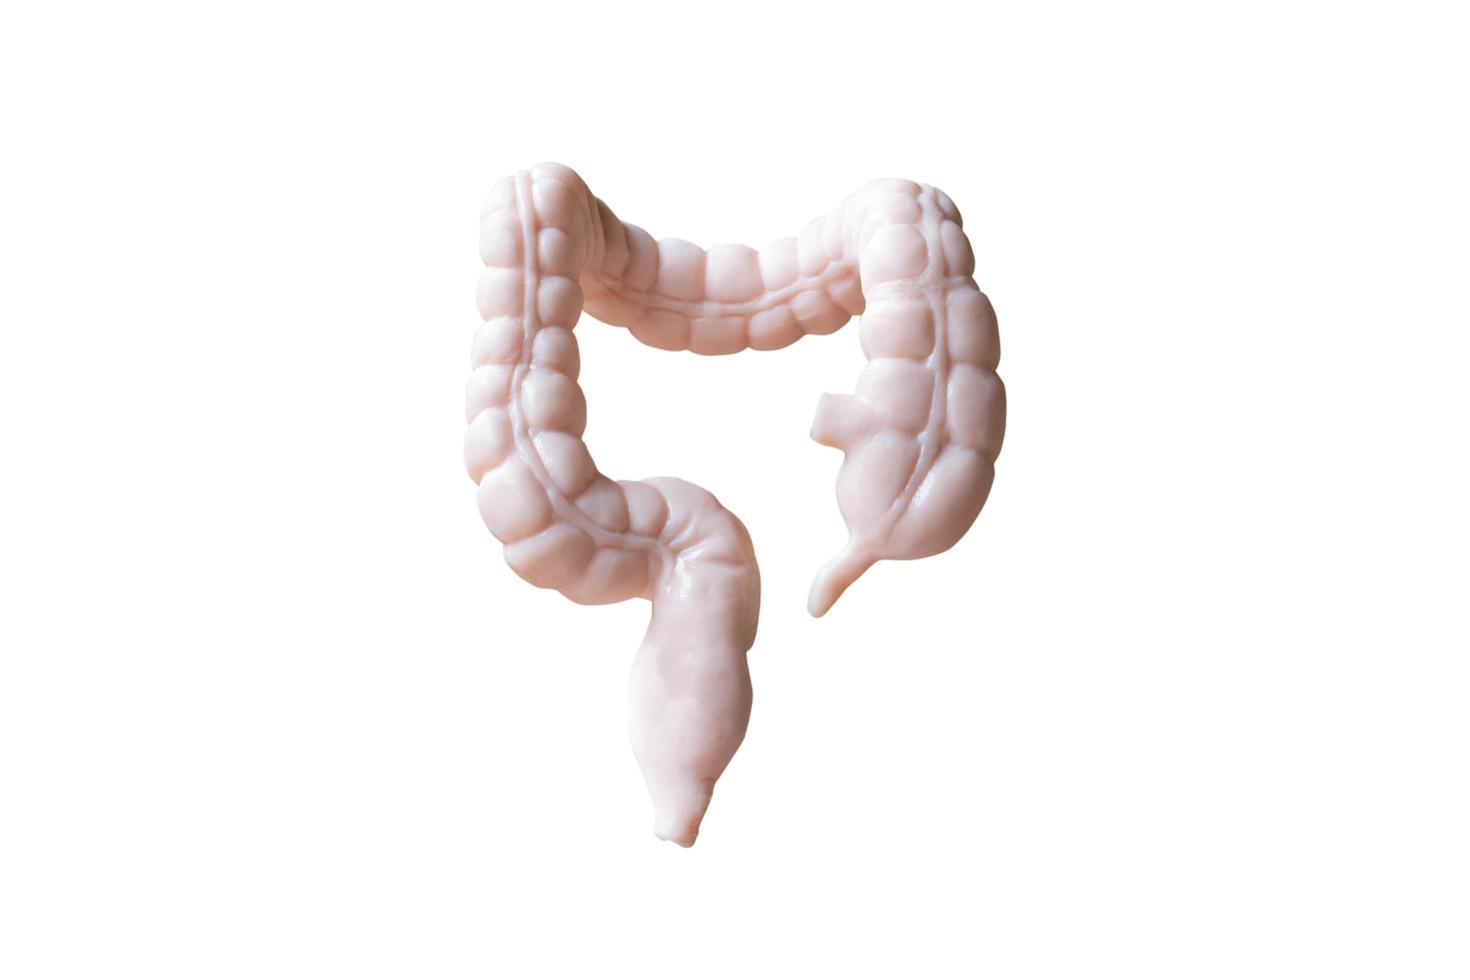 anatomisk modell av mänskliga tjocktarmar isolerad på en vit bakgrund foto